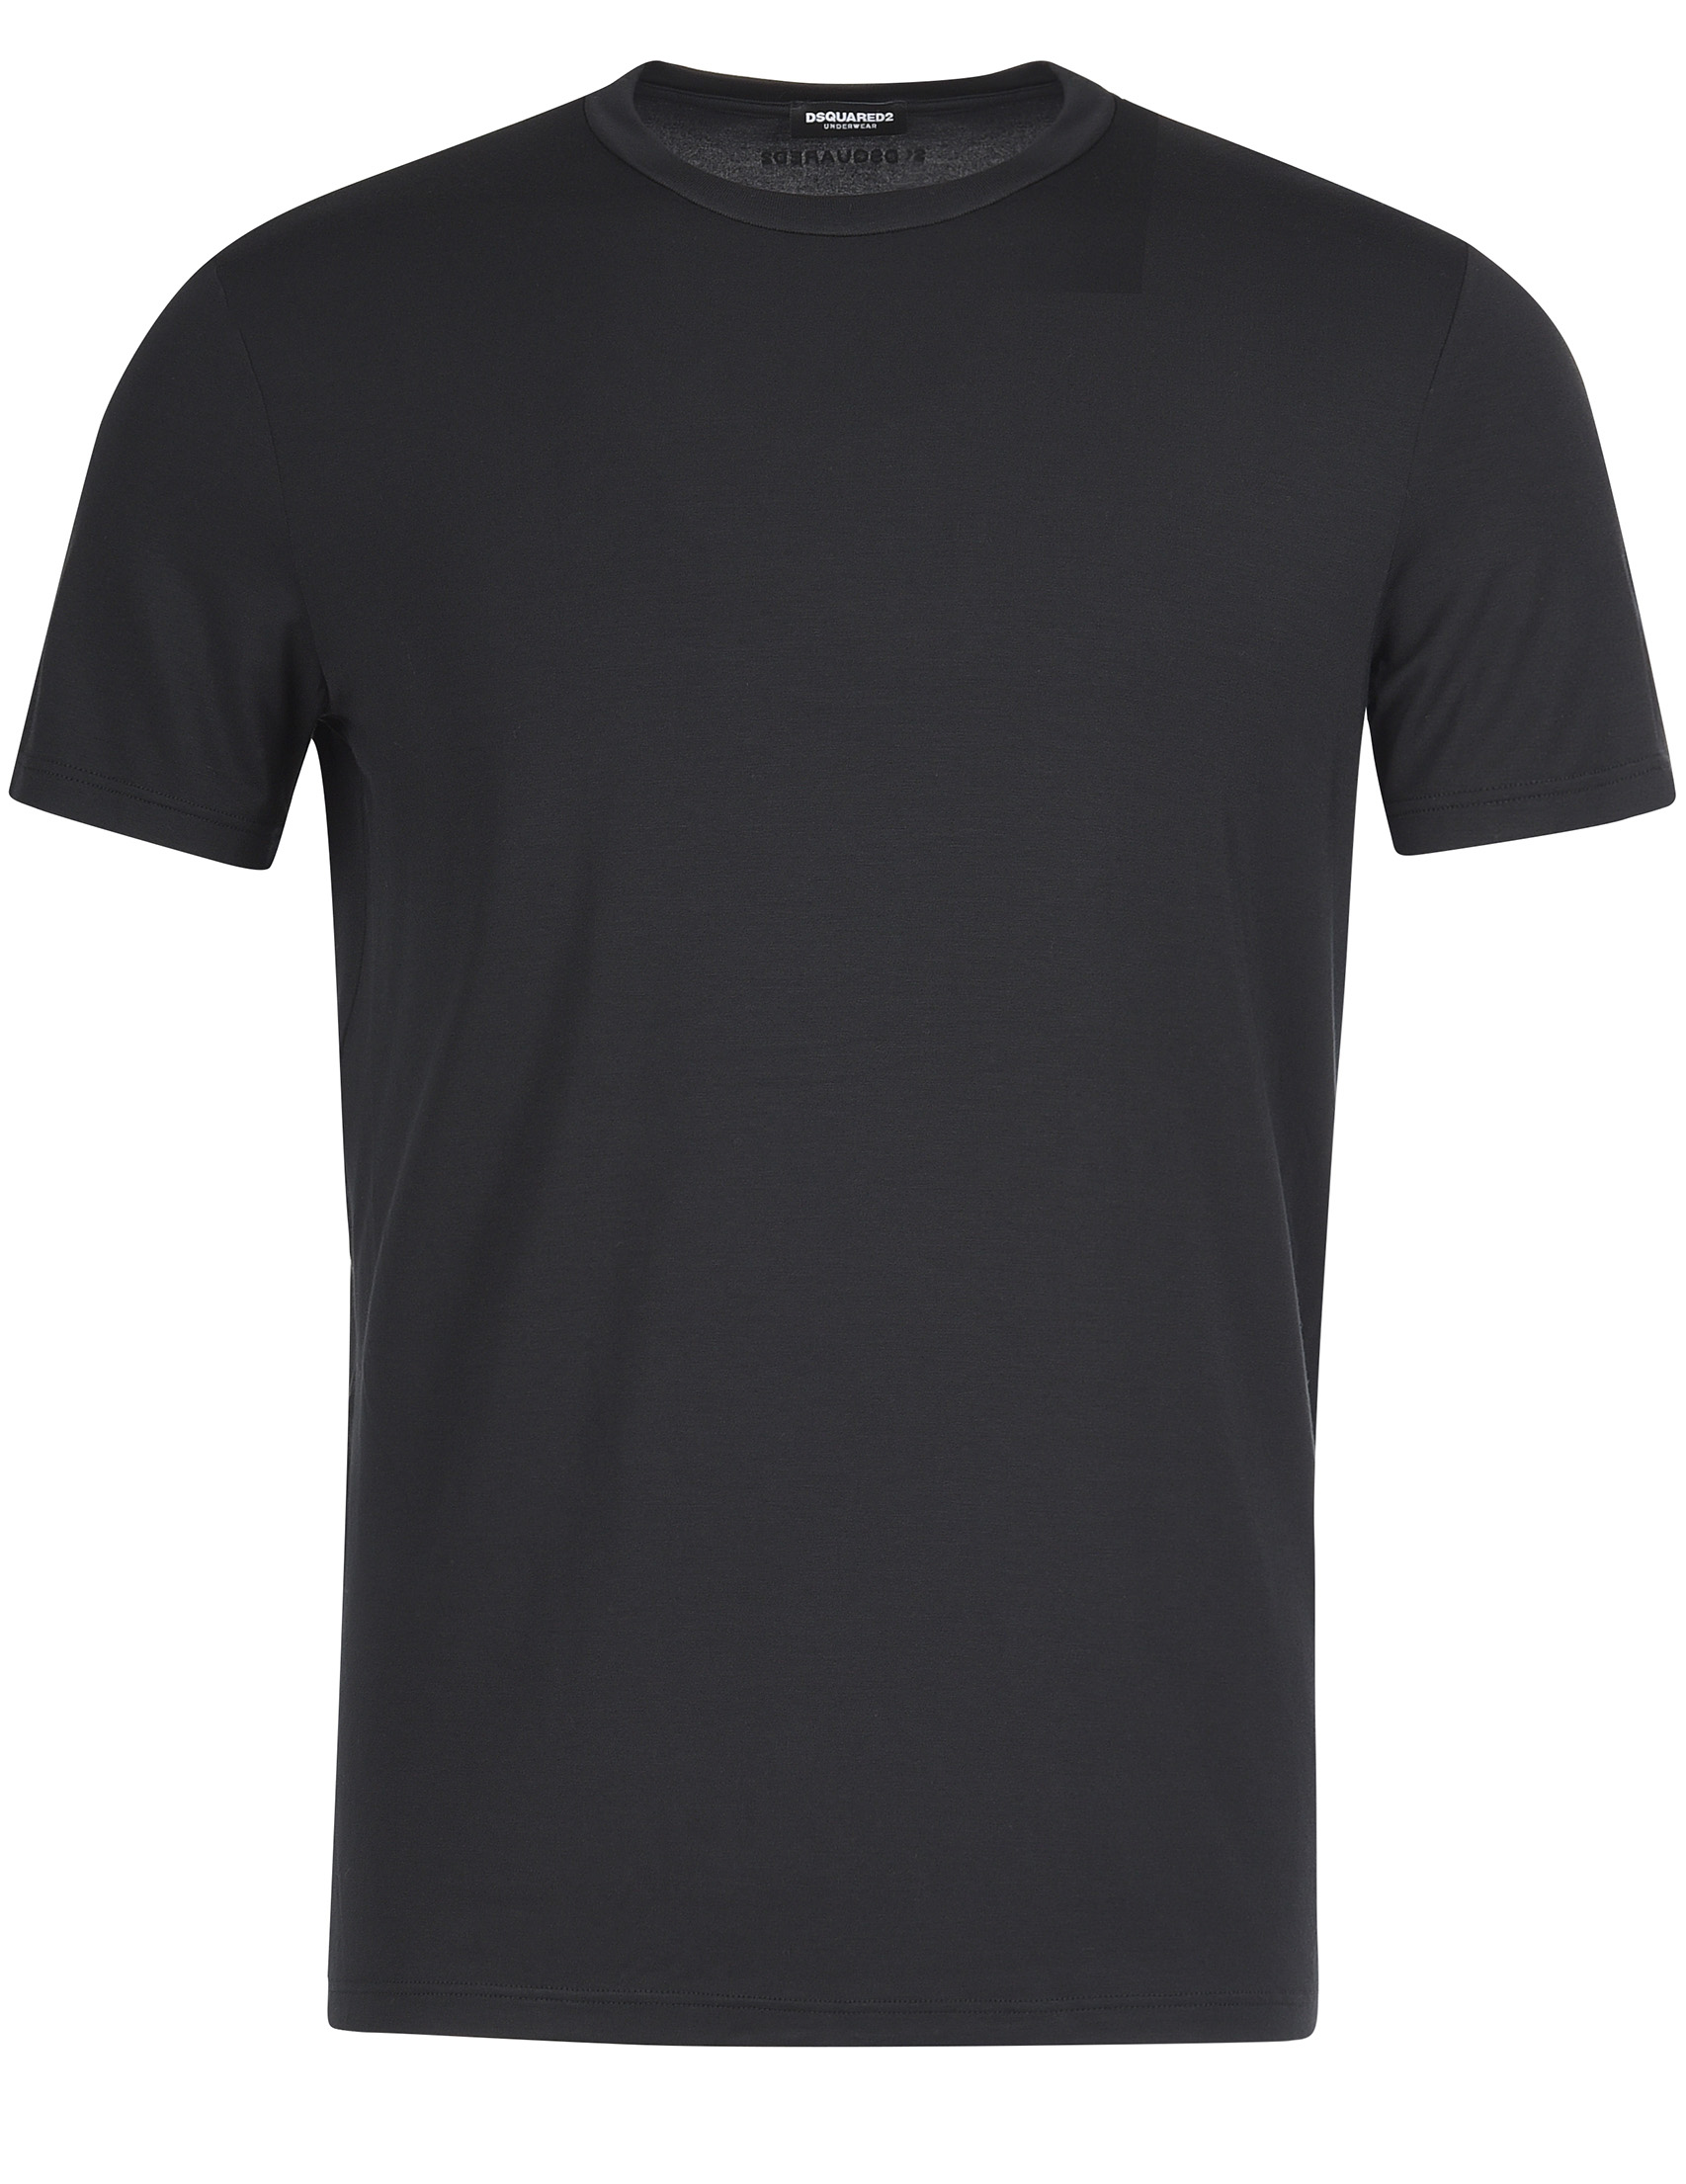 Мужская футболка DSQUARED2 DCX200050-200_black